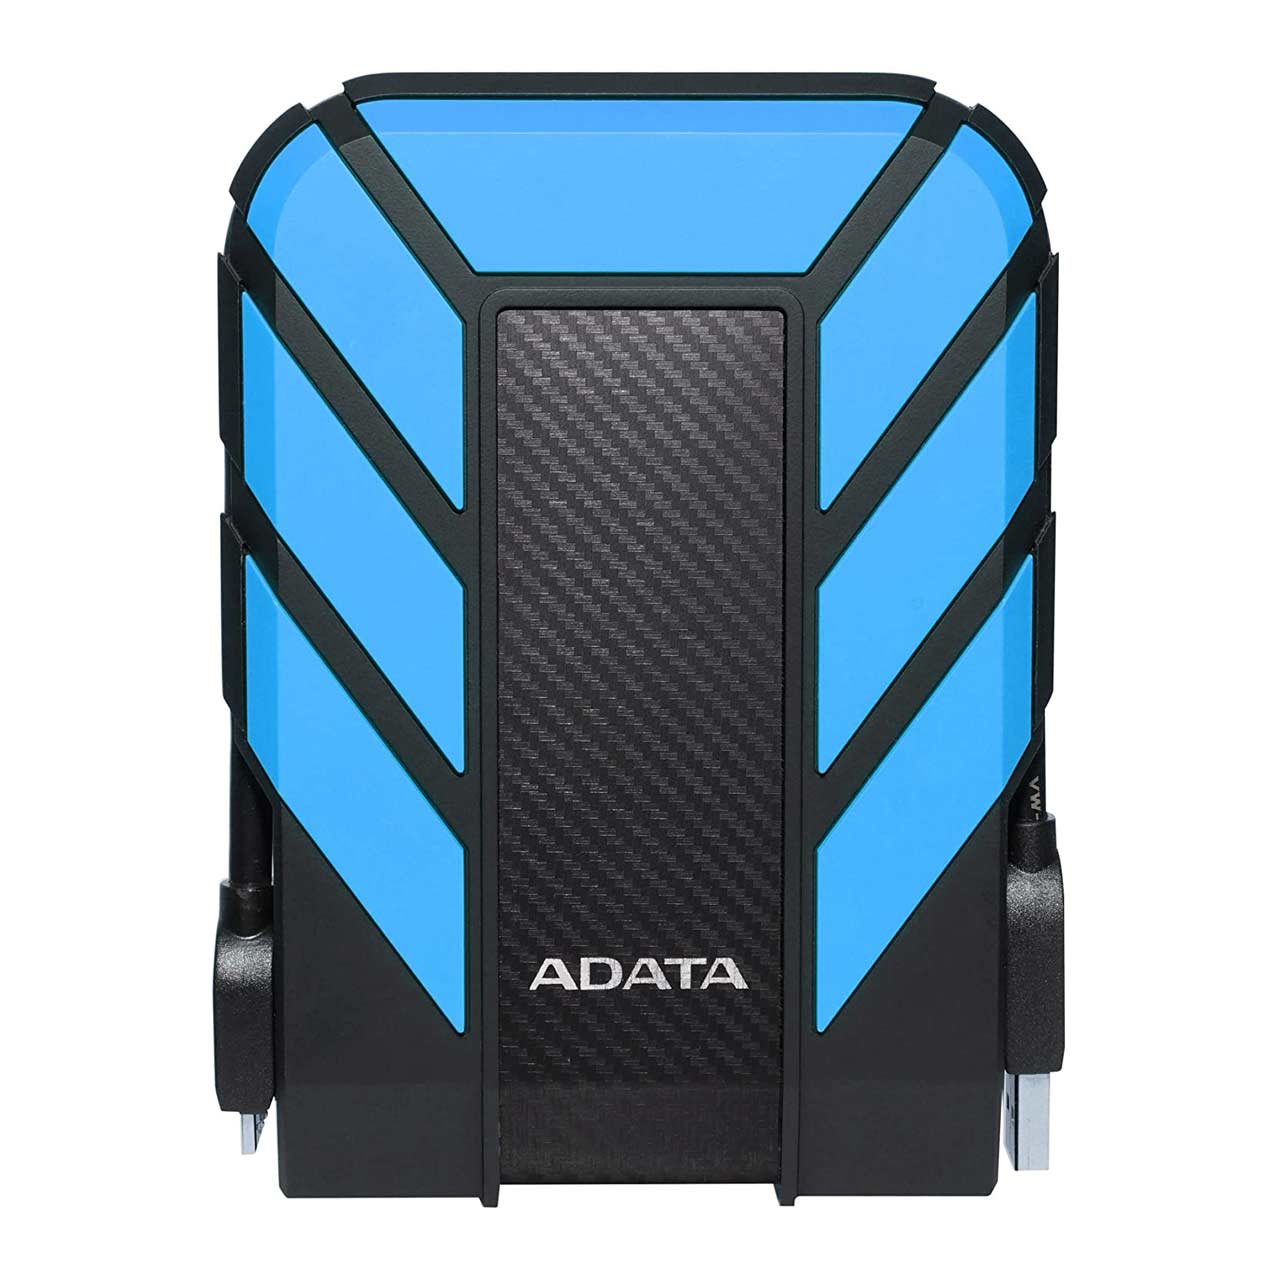 هارد اکسترنال ADATA مدل Durable HD710 Pro ظرفیت 1TB - آبی (گارانتی شرکت آونگ